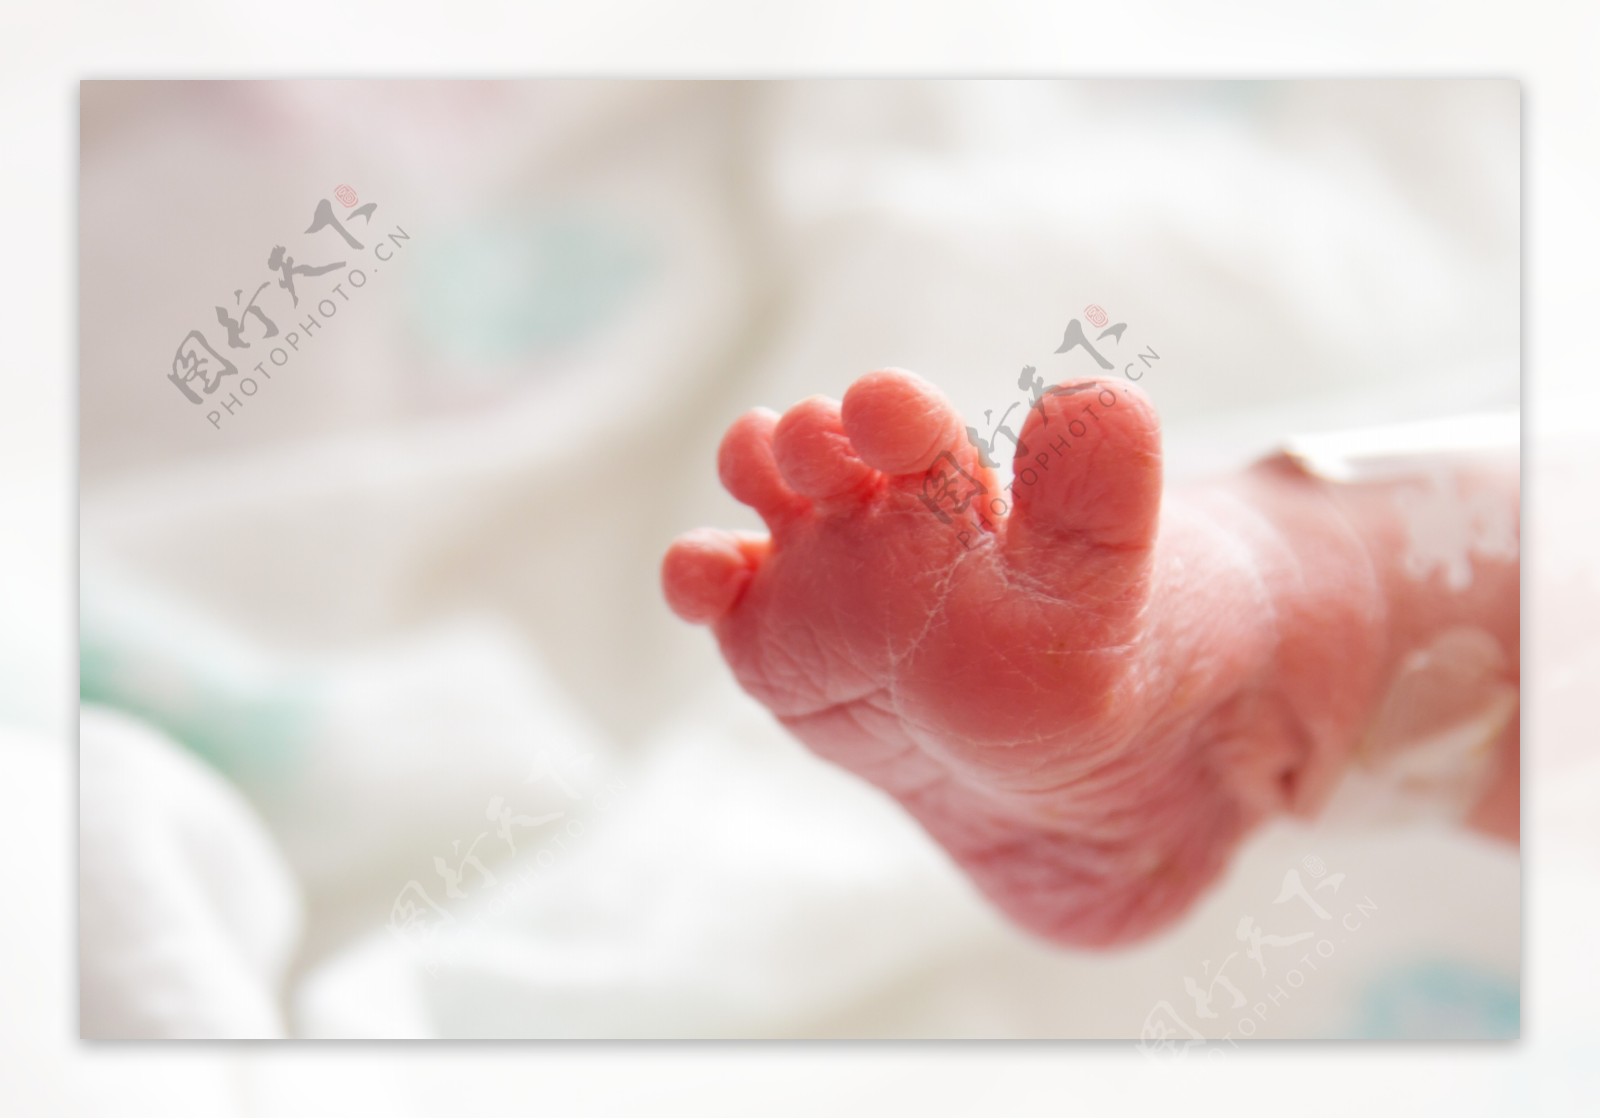 新生儿的小脚丫图片